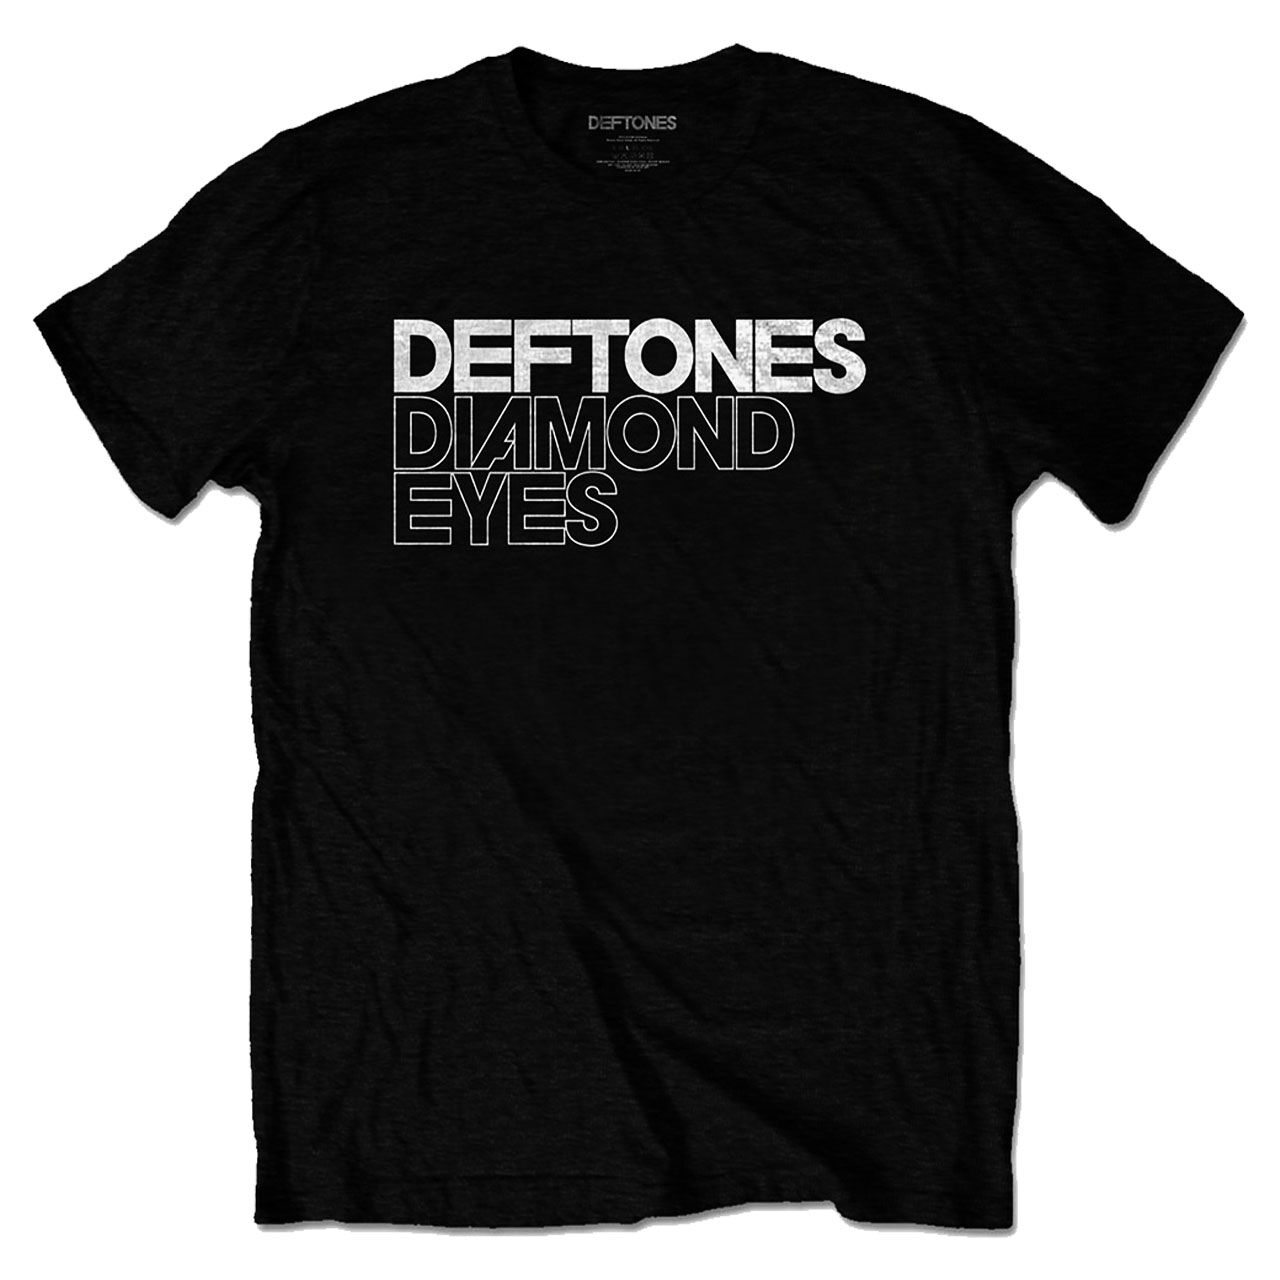 DEFTONES Diamond Eyes Tshirt